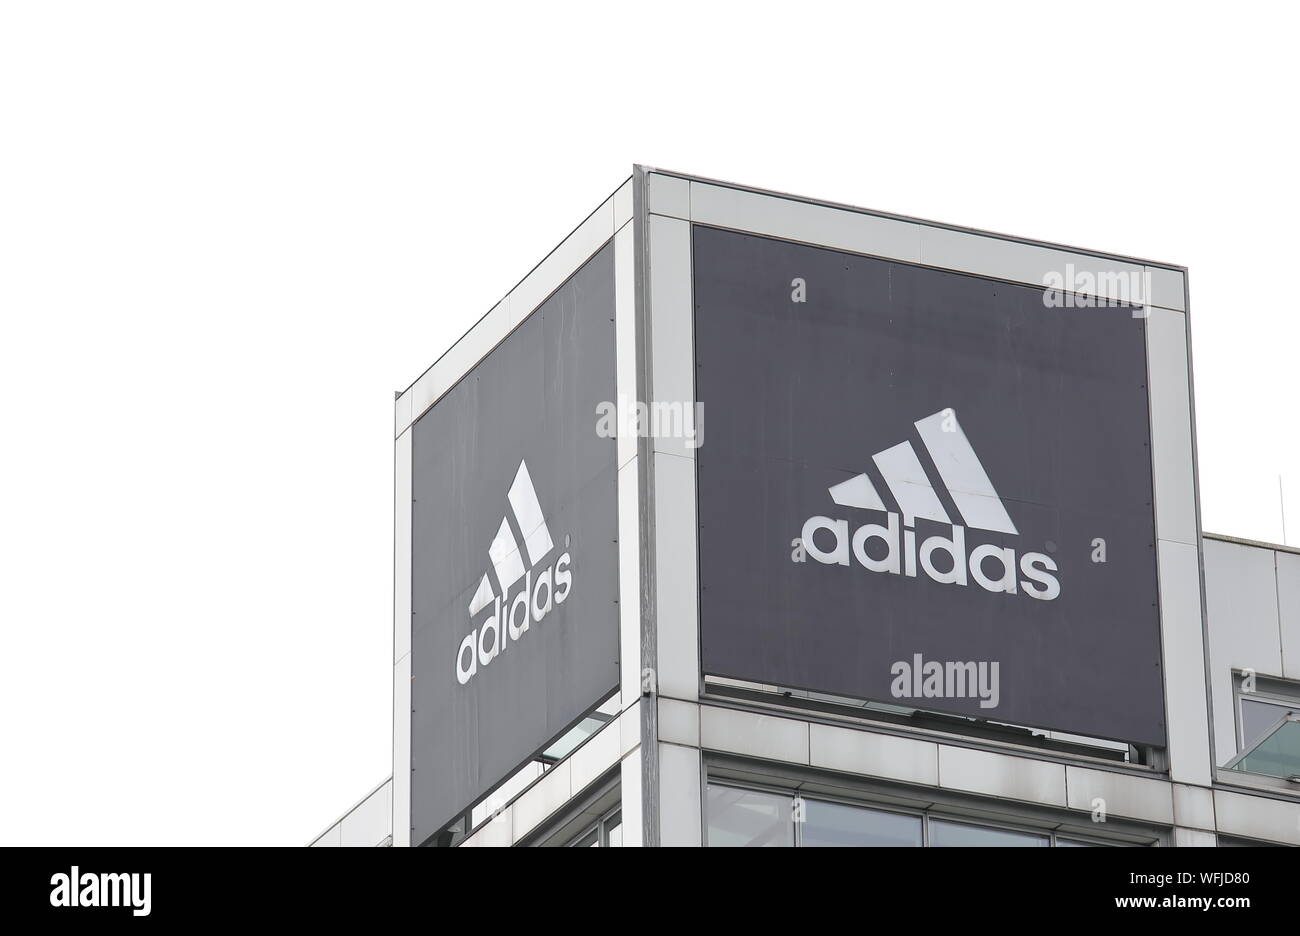 adidas company stock